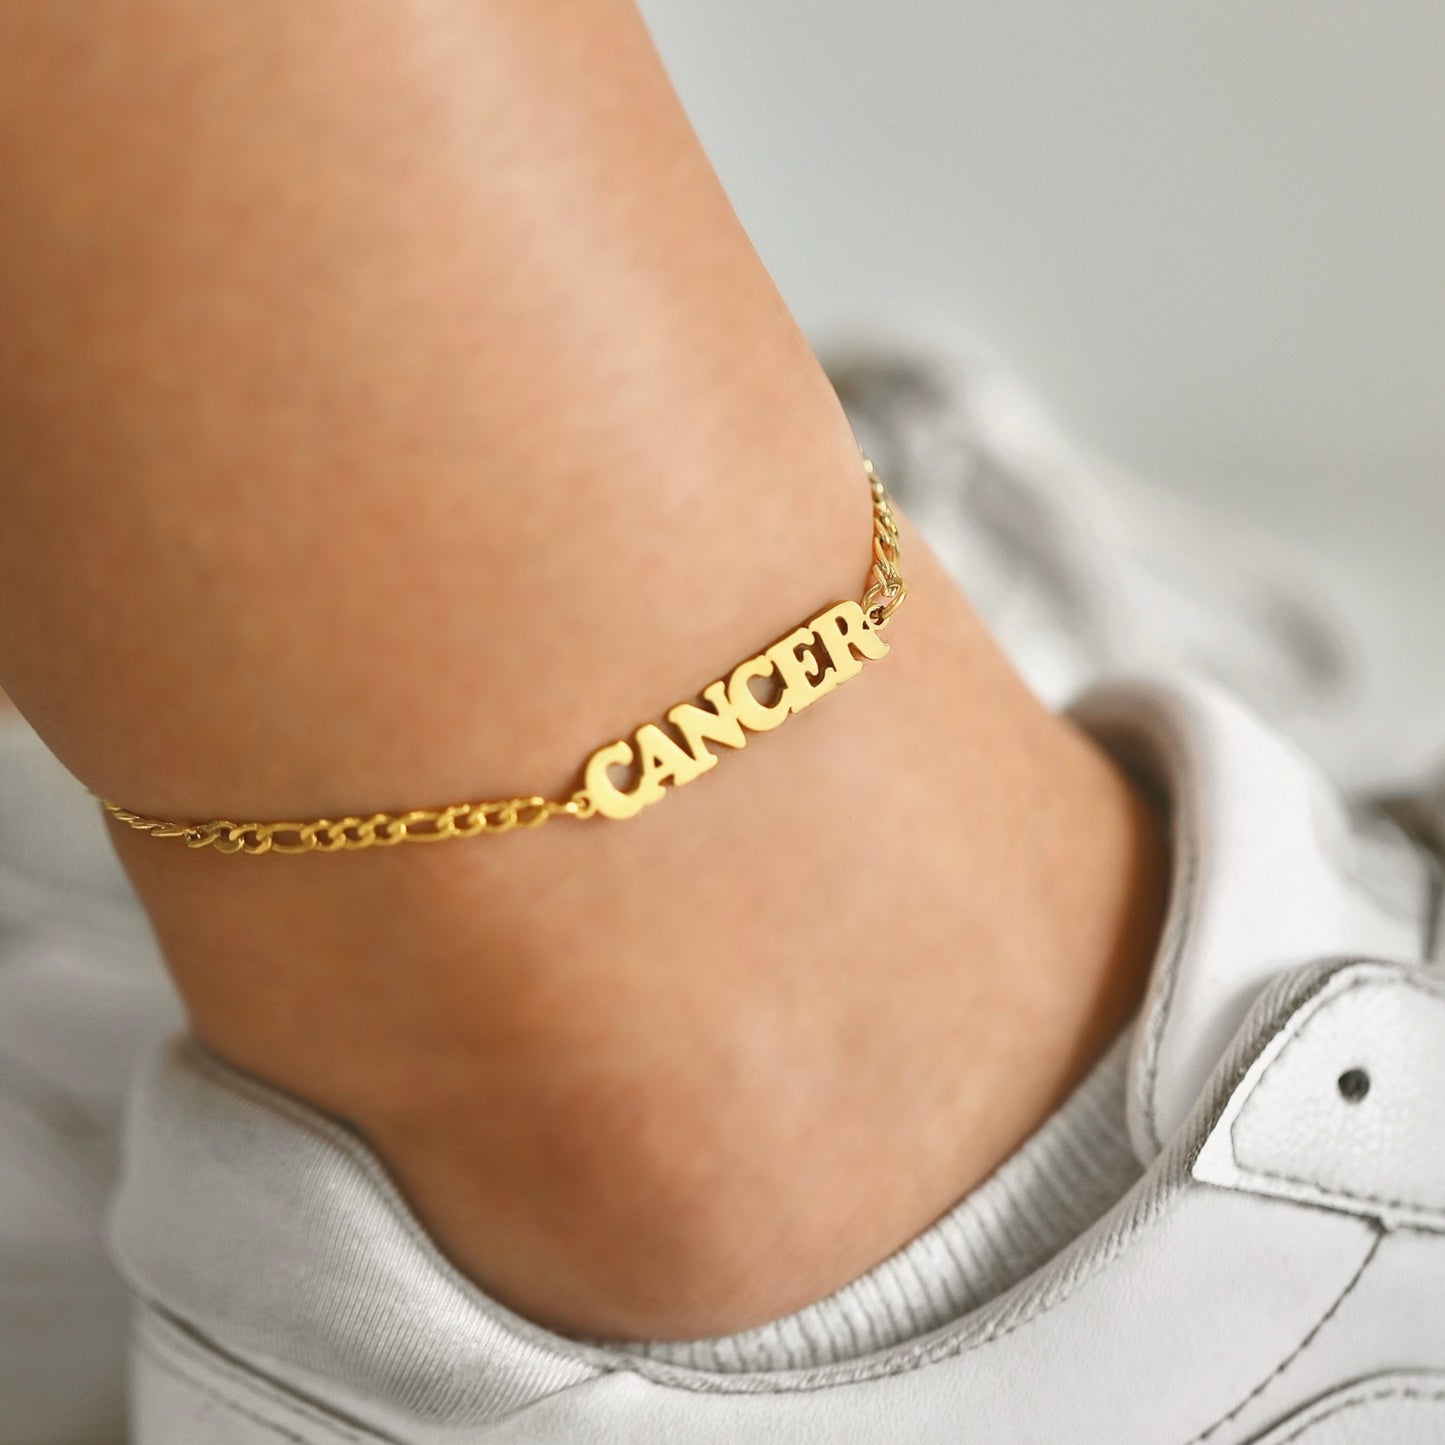 Cancer Anklet